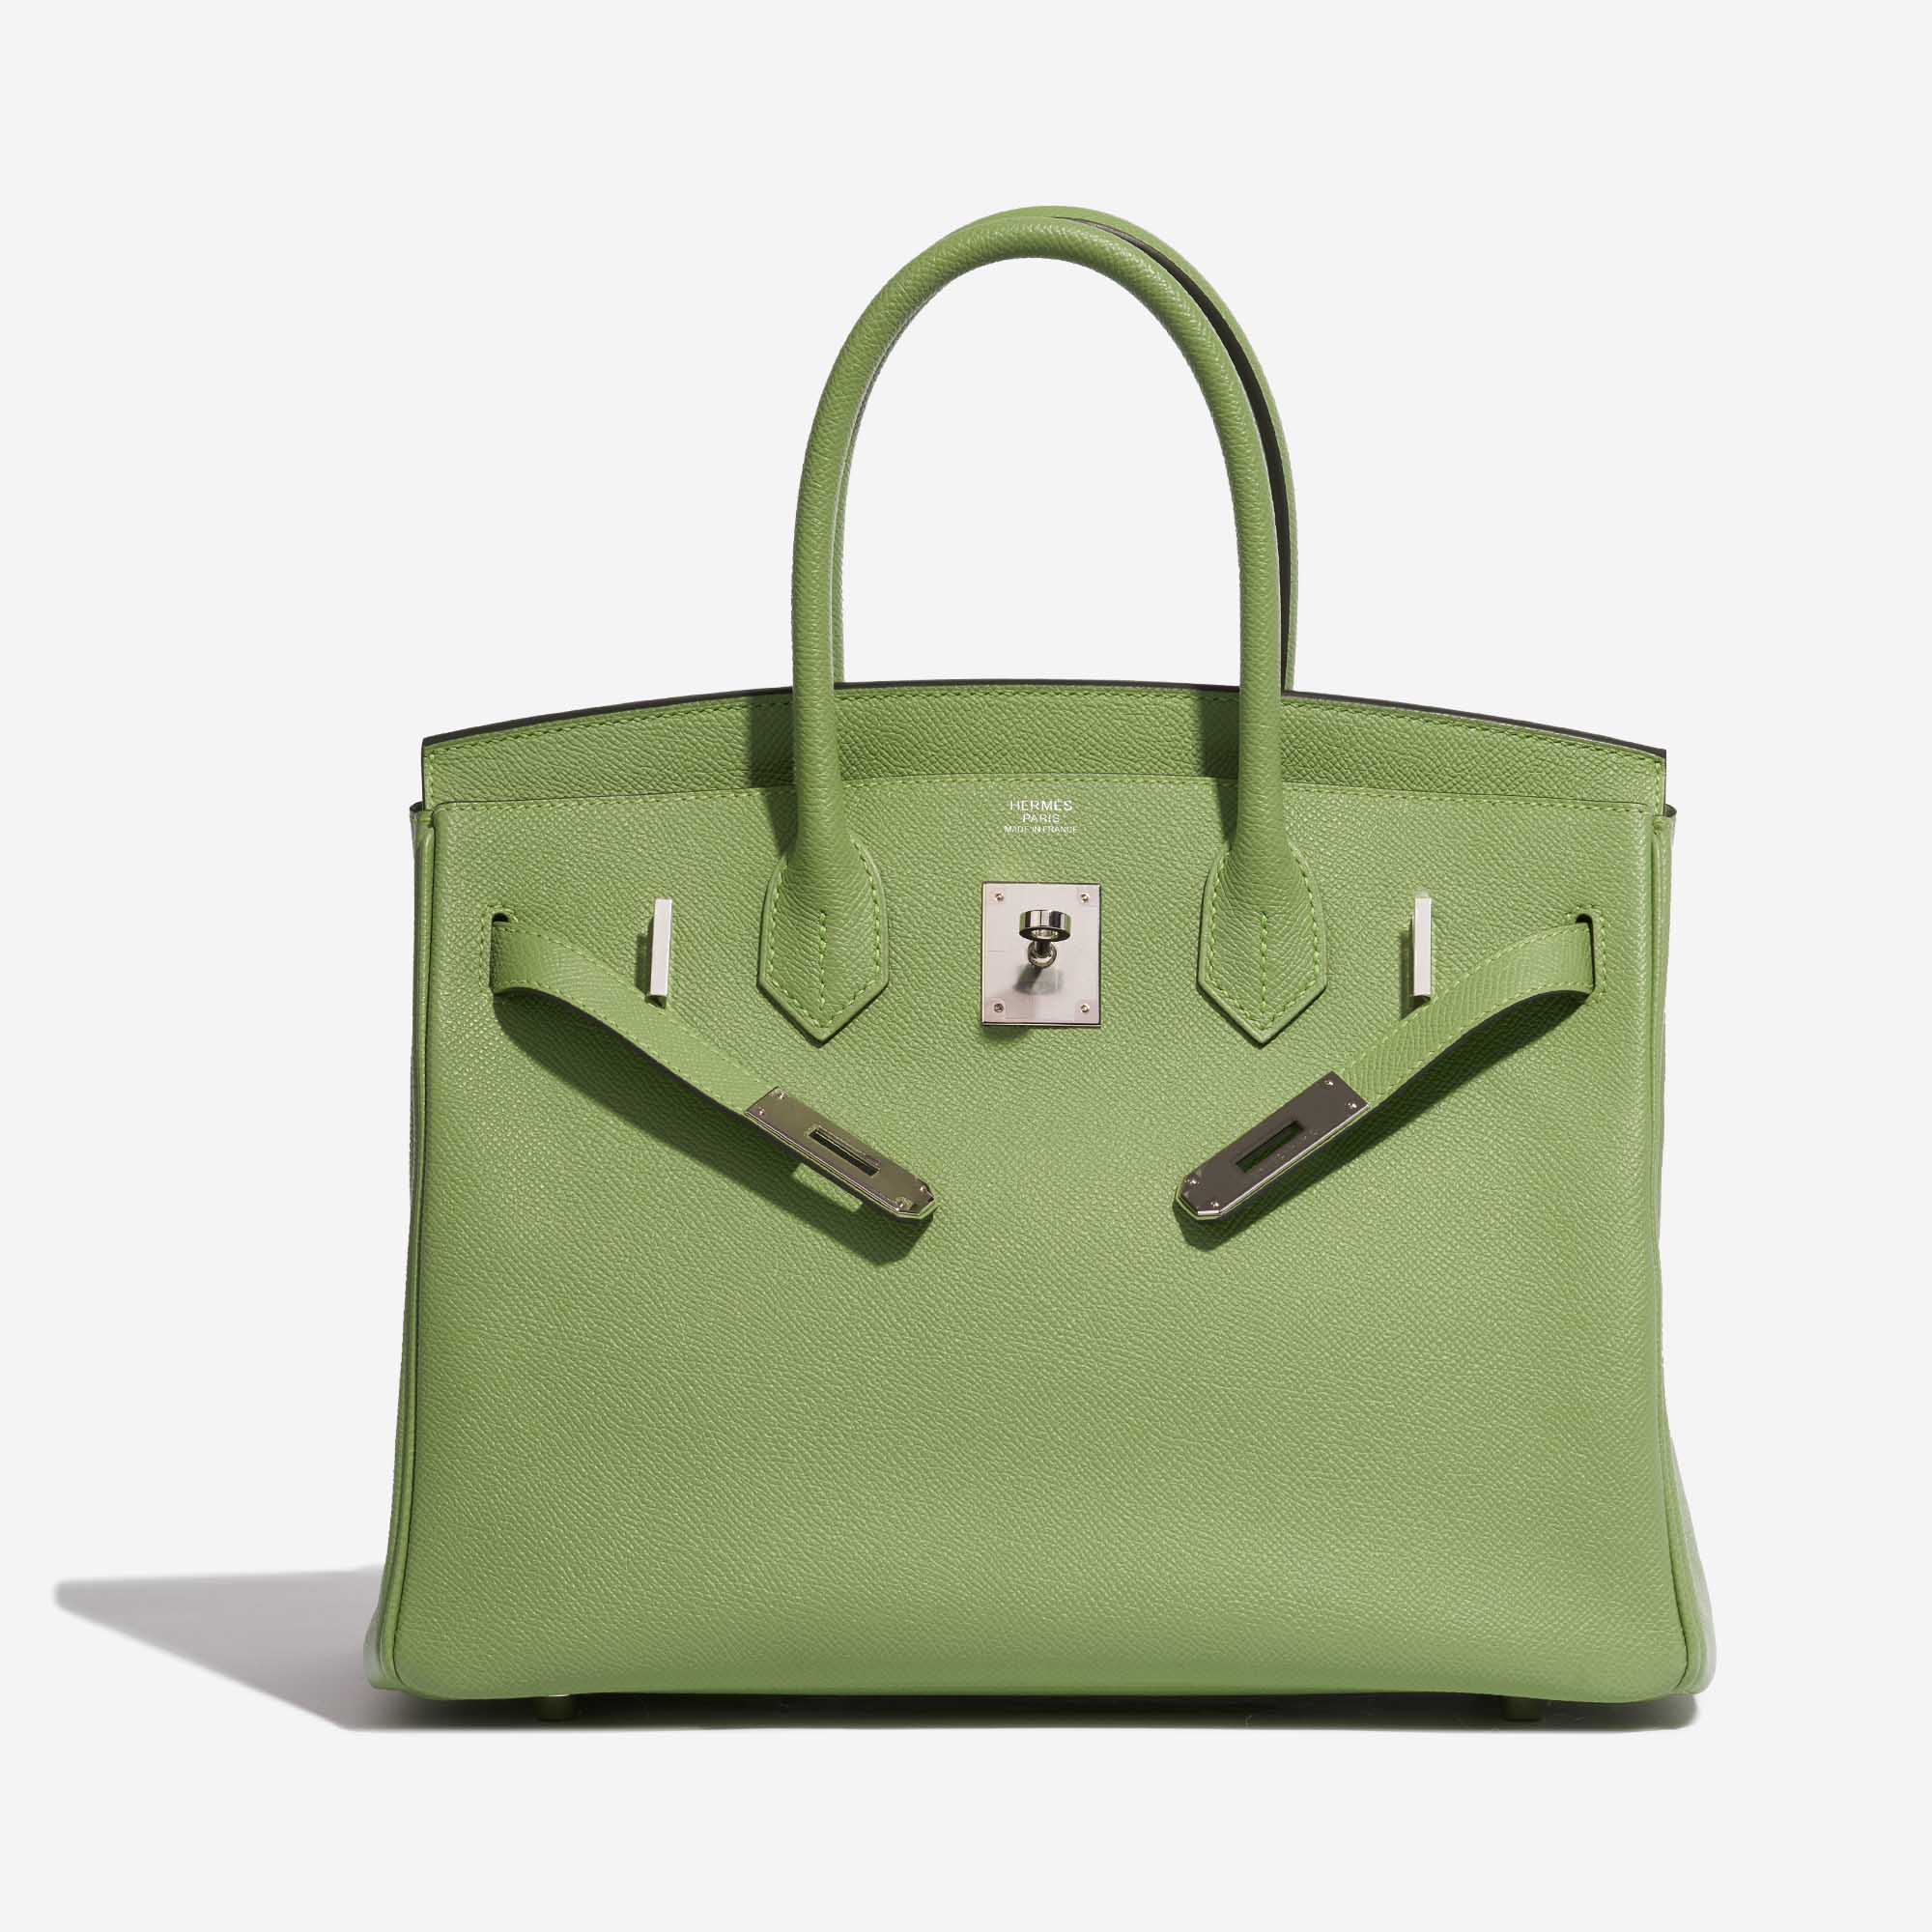 Pre-owned Hermès Tasche Birkin 30 Epsom Vert Criquet Grün Front Open | Verkaufen Sie Ihre Designer-Tasche auf Saclab.com